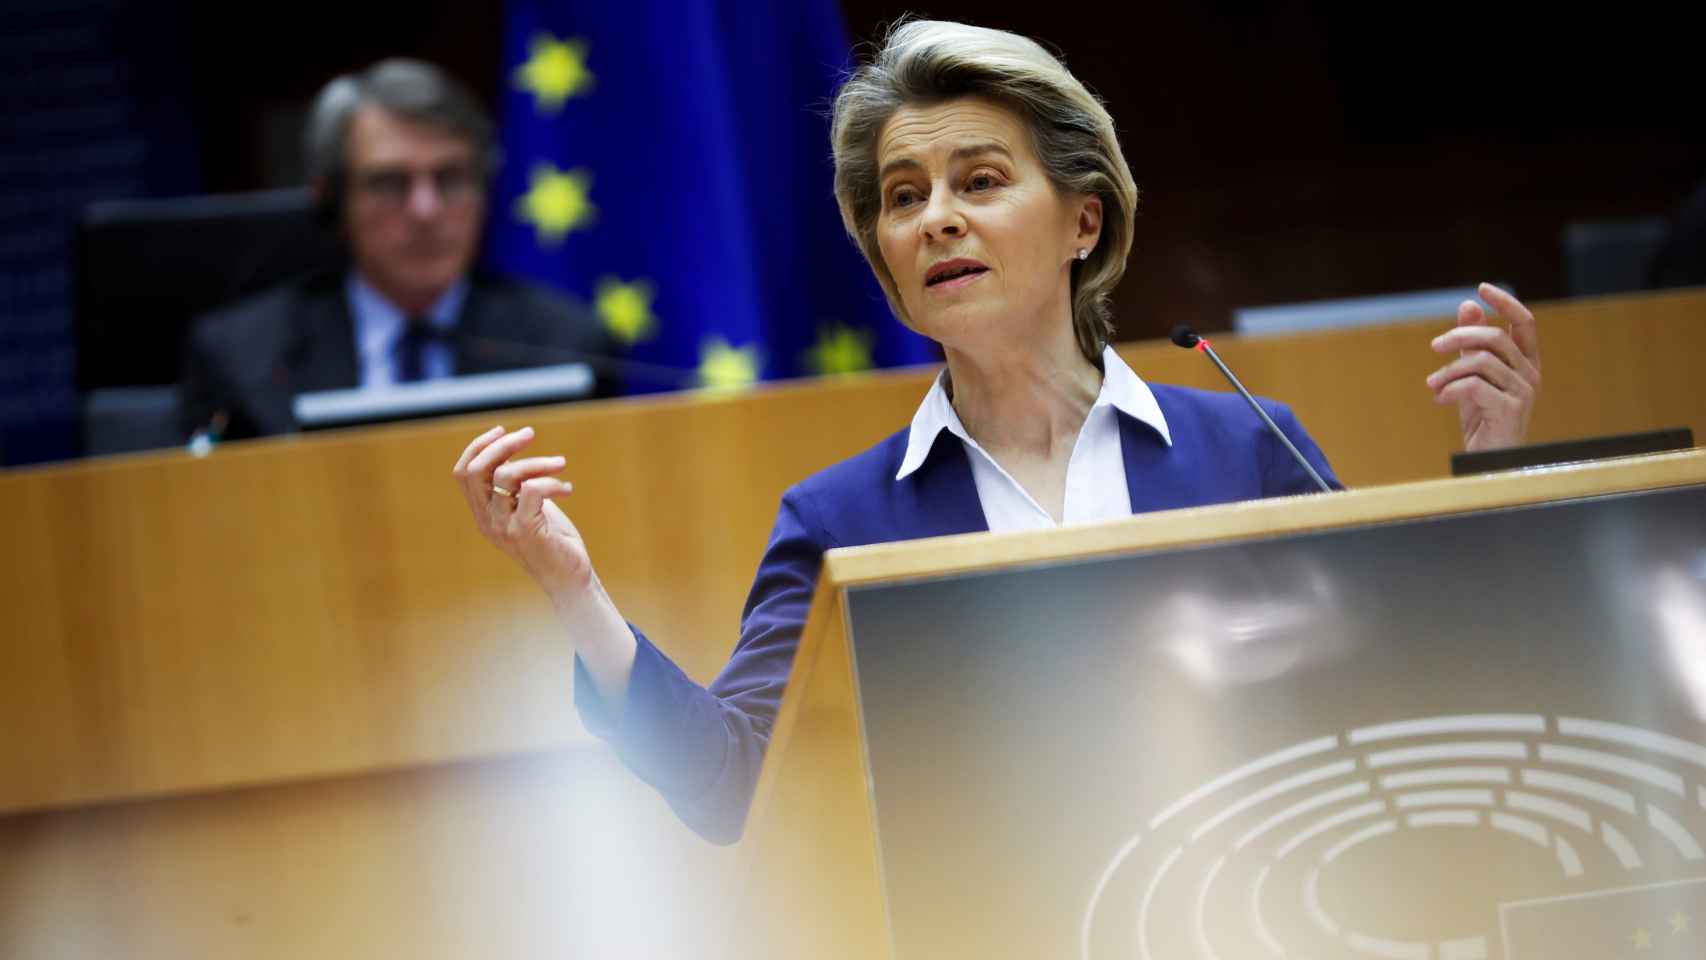 La presidenta de la Comisión, Ursula von der Leyen, durante una comparecencia en la Eurocámara este miércoles